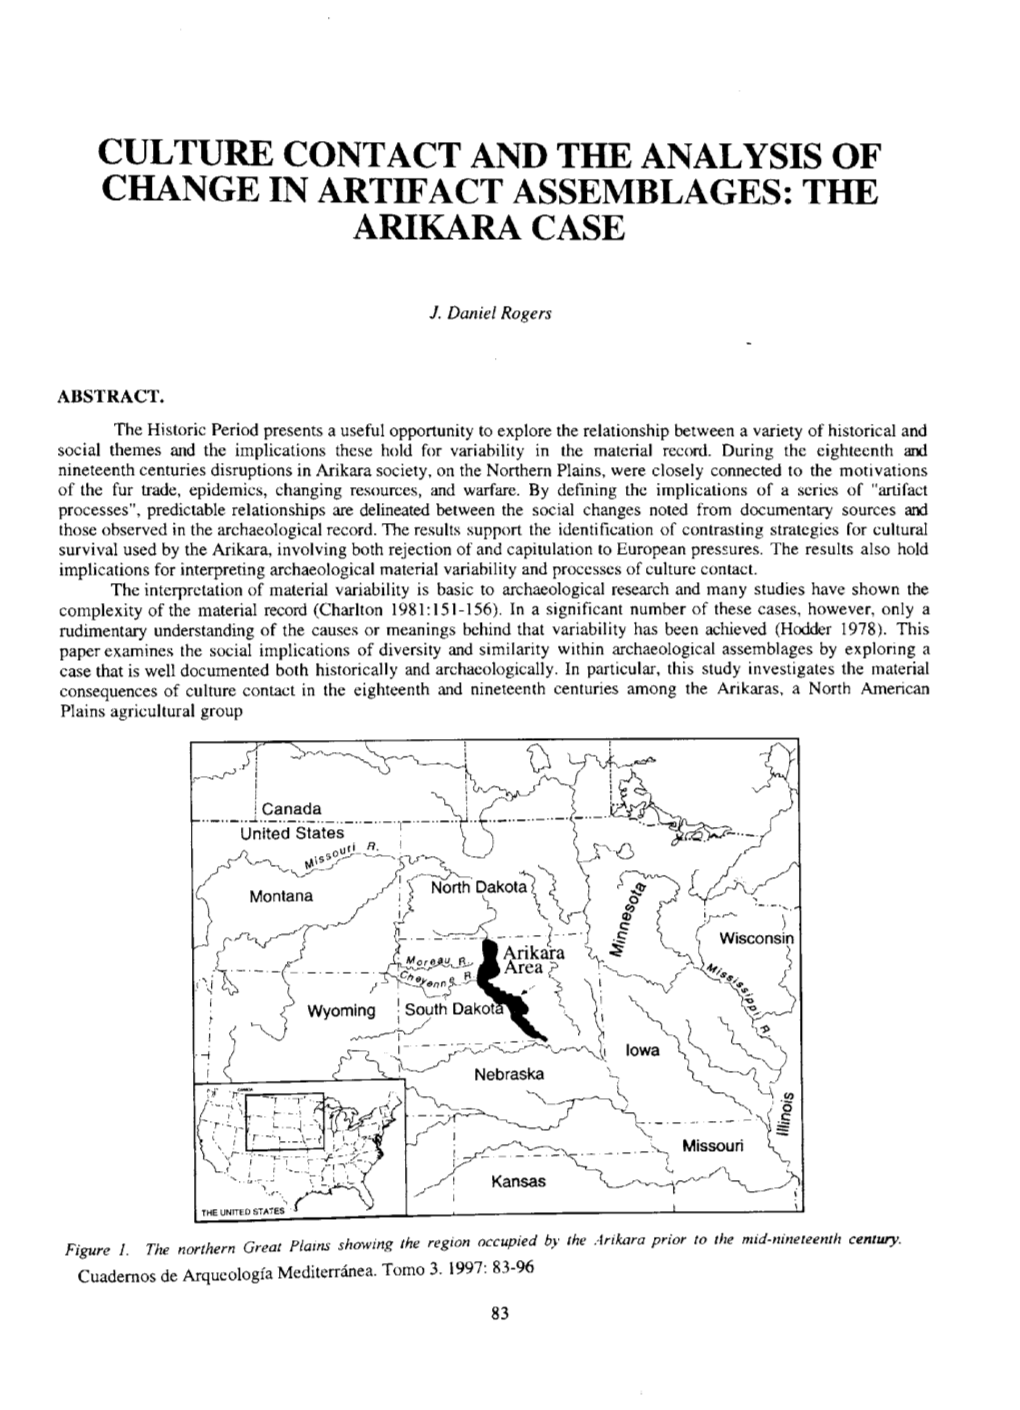 The Arikara Case